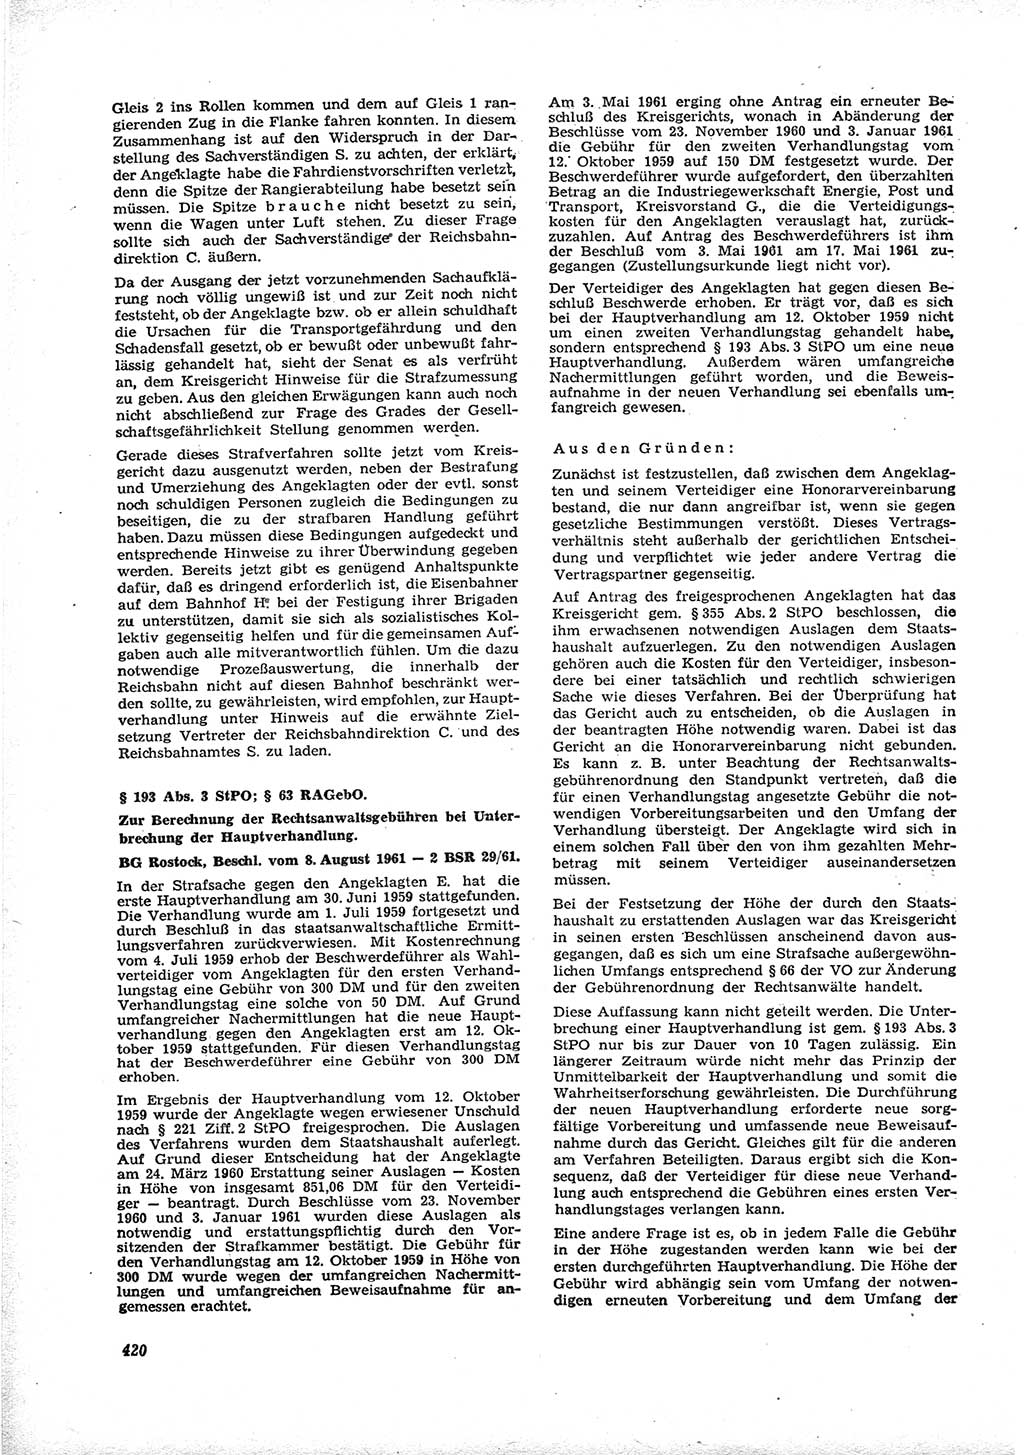 Neue Justiz (NJ), Zeitschrift für Recht und Rechtswissenschaft [Deutsche Demokratische Republik (DDR)], 16. Jahrgang 1962, Seite 420 (NJ DDR 1962, S. 420)